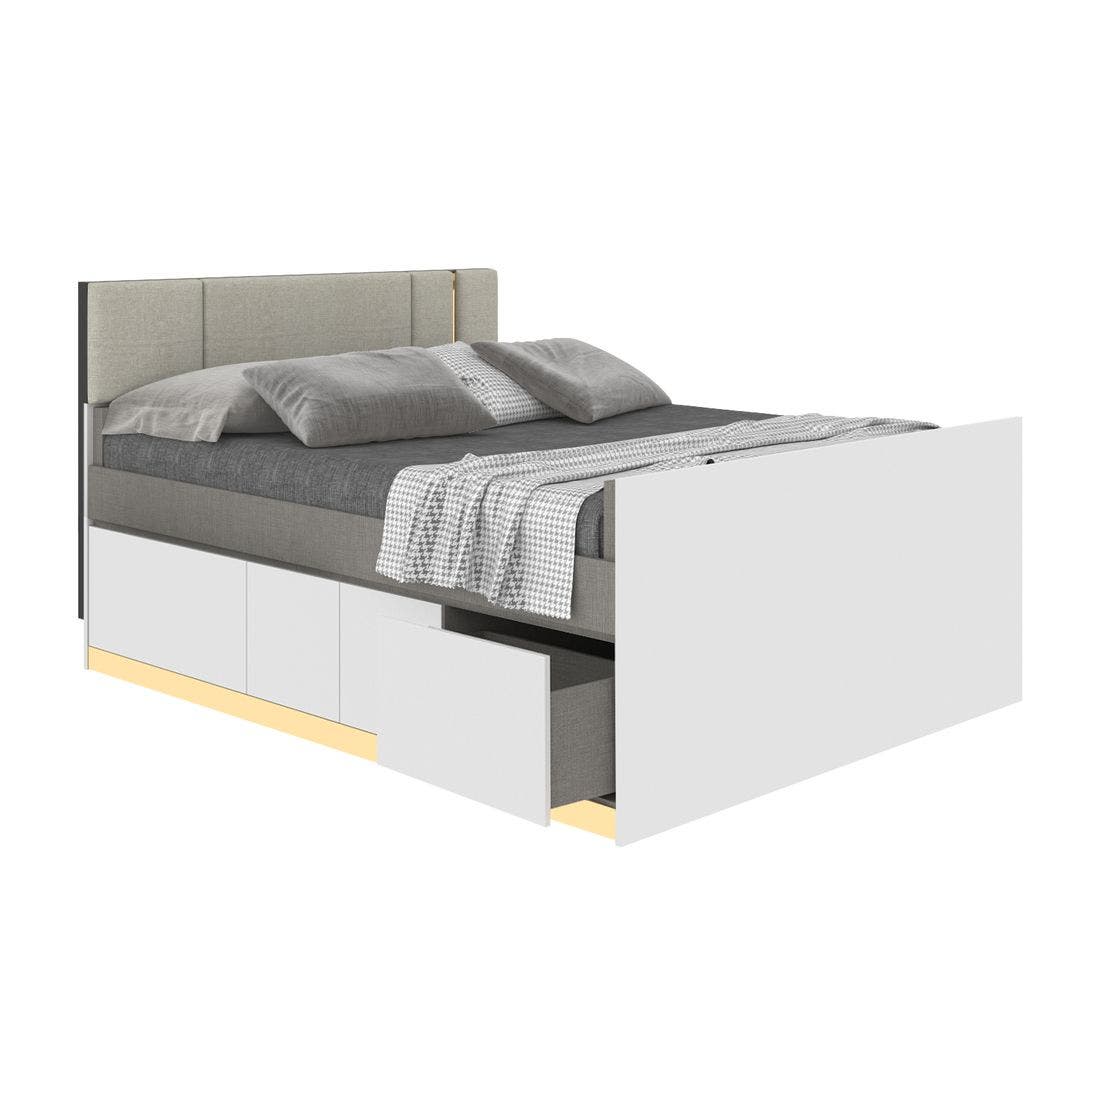 19203284-blisz-furniture-bedroom-furniture-beds-06